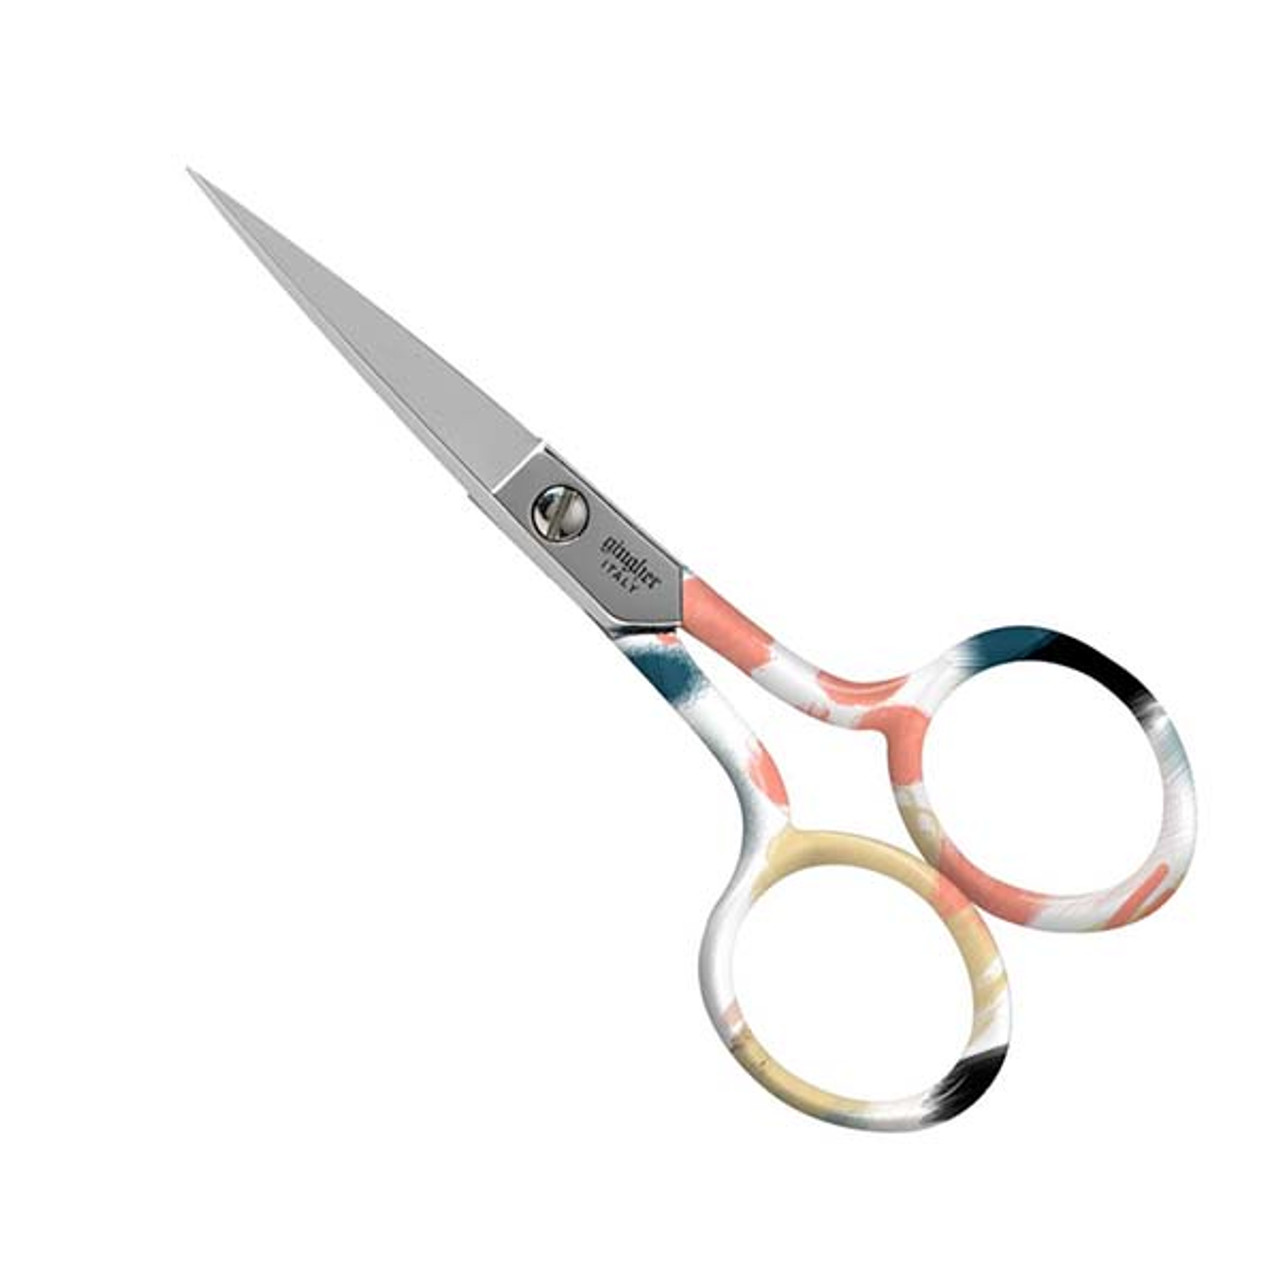 Gingher® Scissors